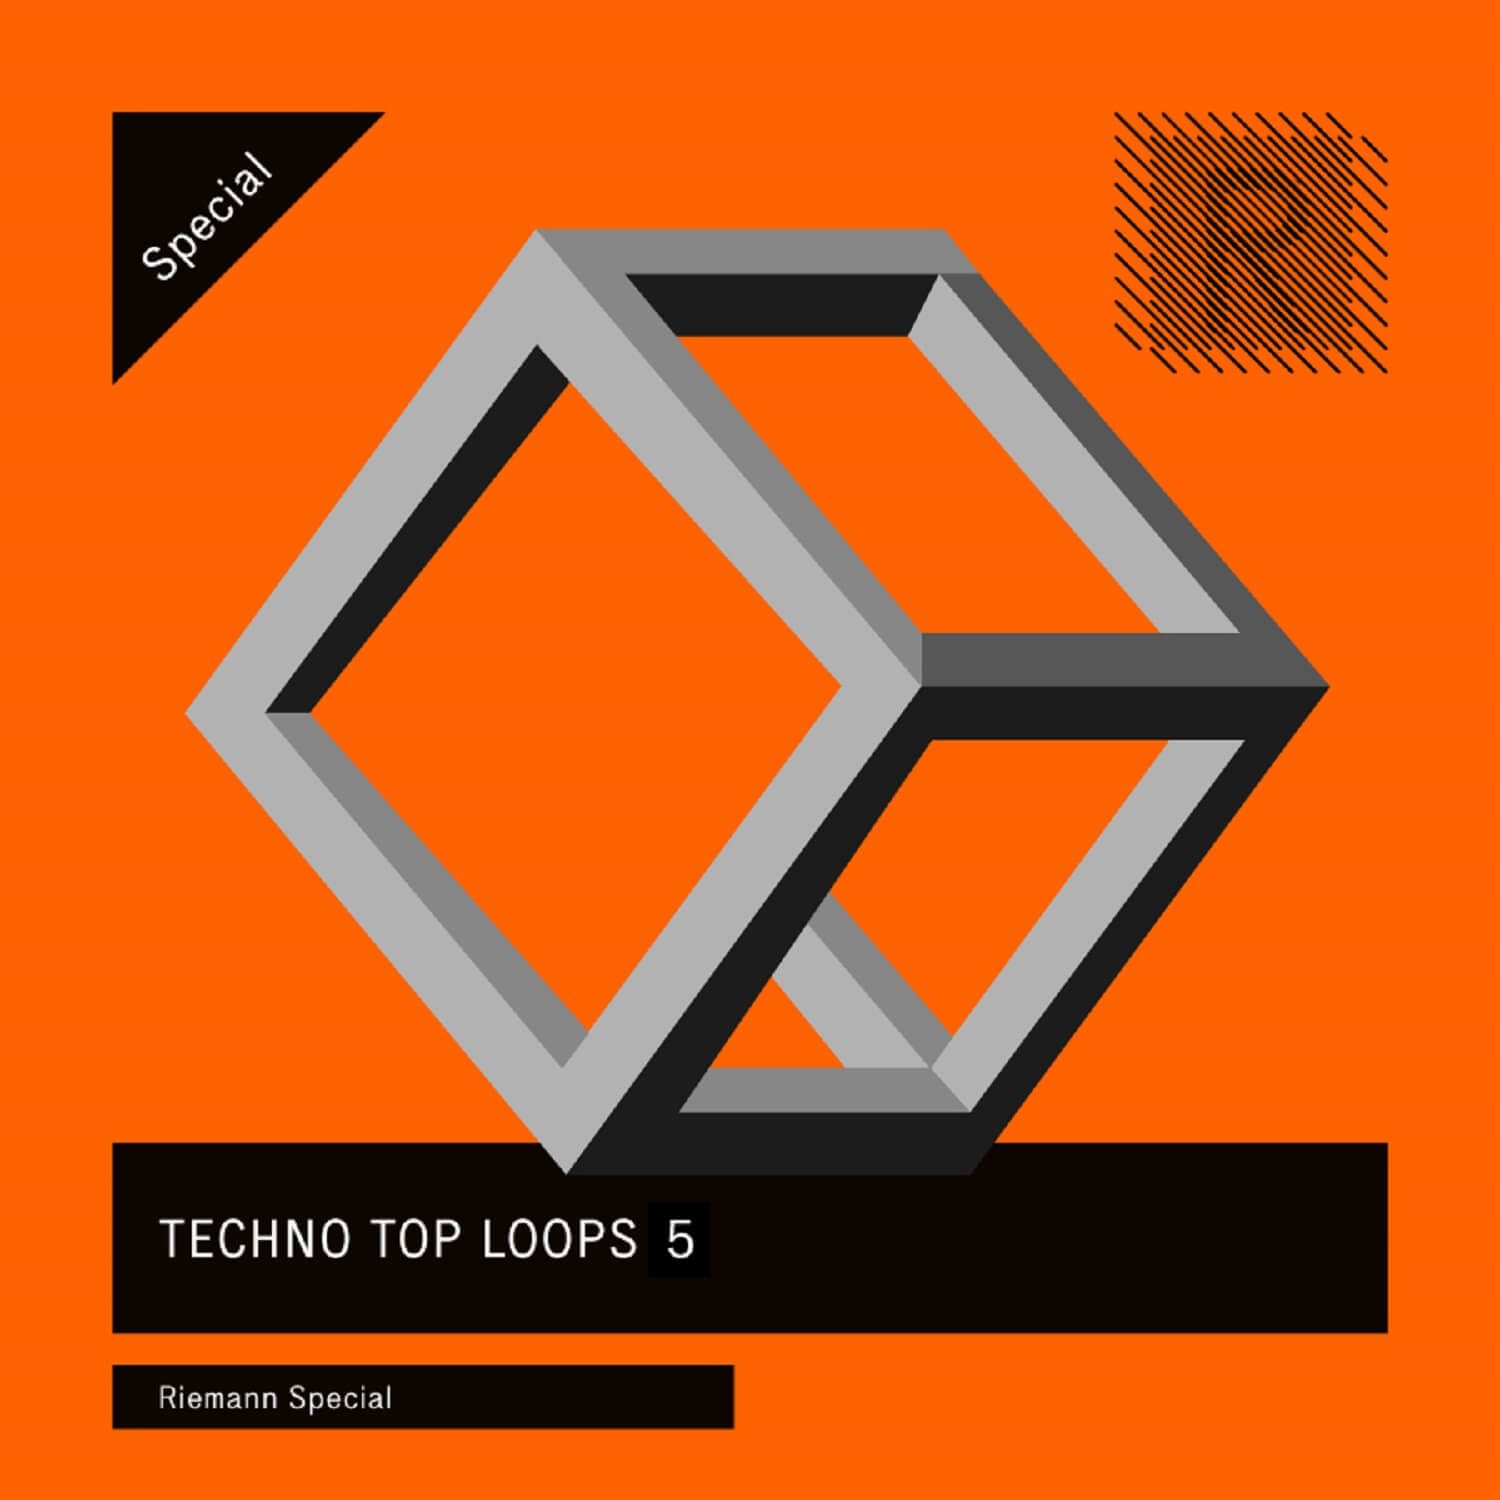 Riemann-Techno-Top-Loops-5